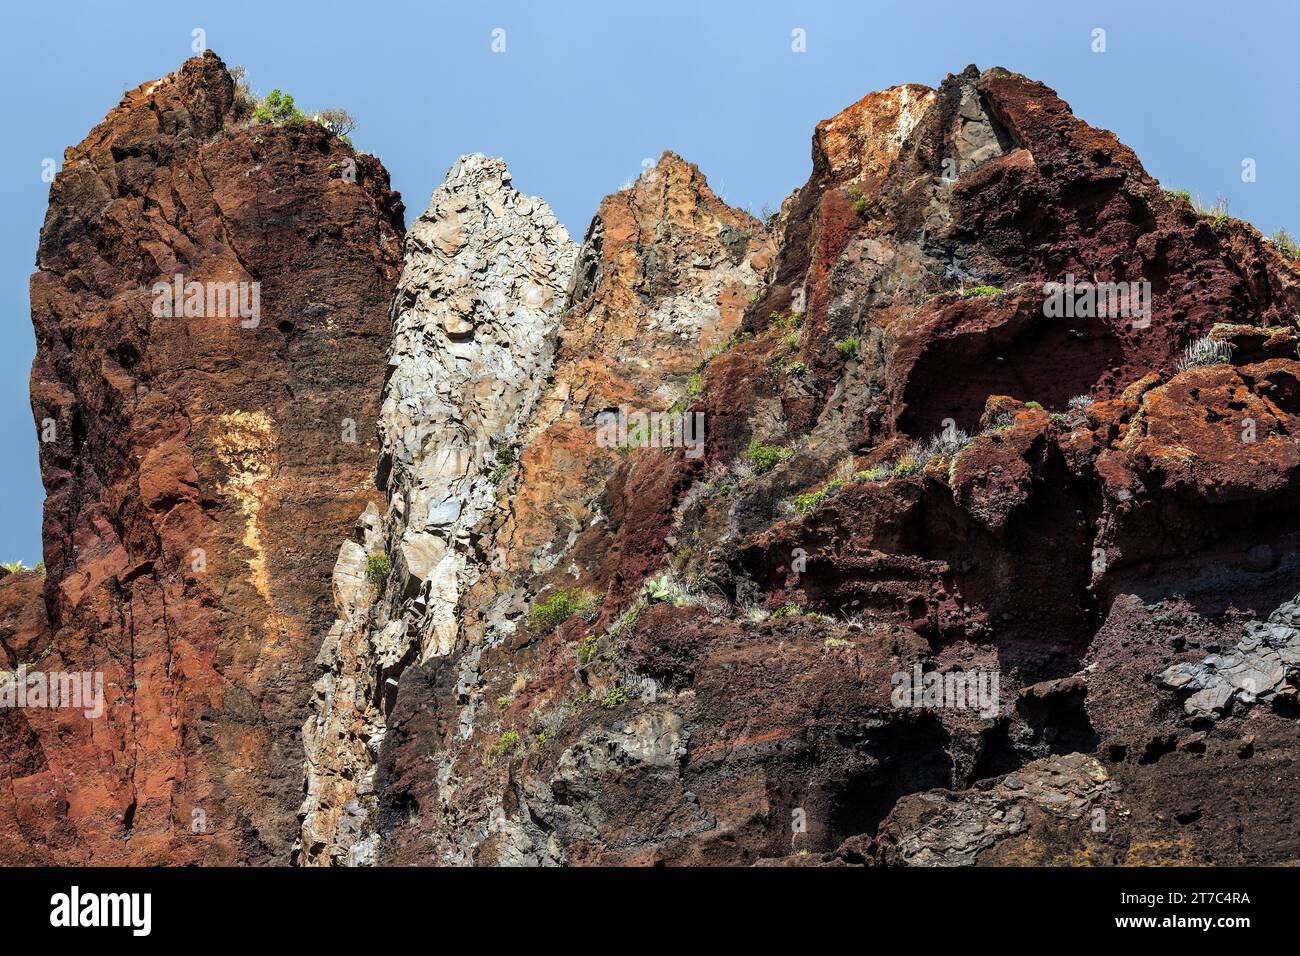 Roches de lave altérées sur les falaises près de Paul do Mar, Madère, Portugal Banque D'Images